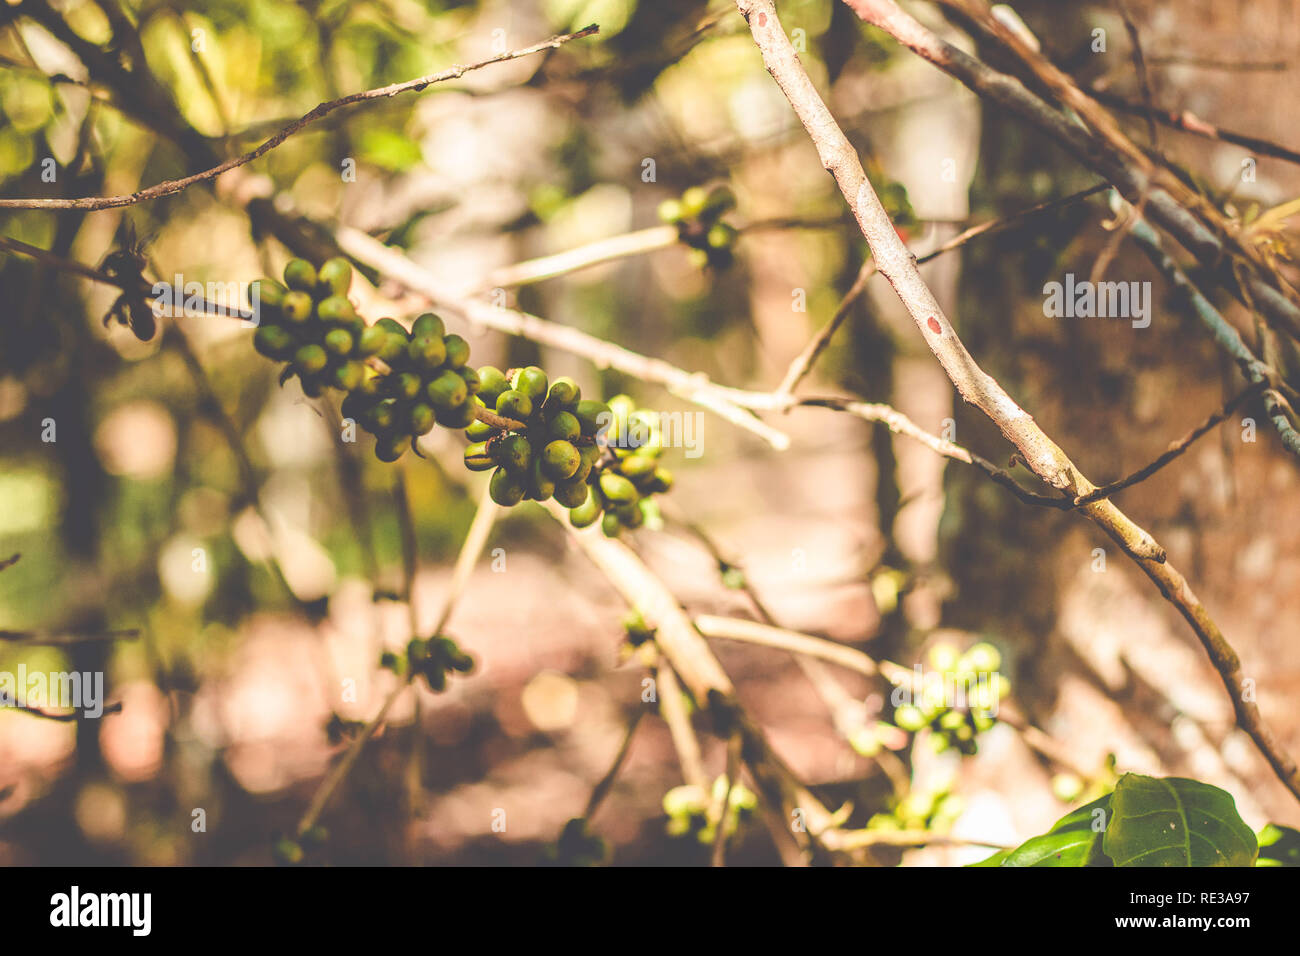 Organic green Coffee beans on the coffee tree. Brazilian Coffee Stock Photo